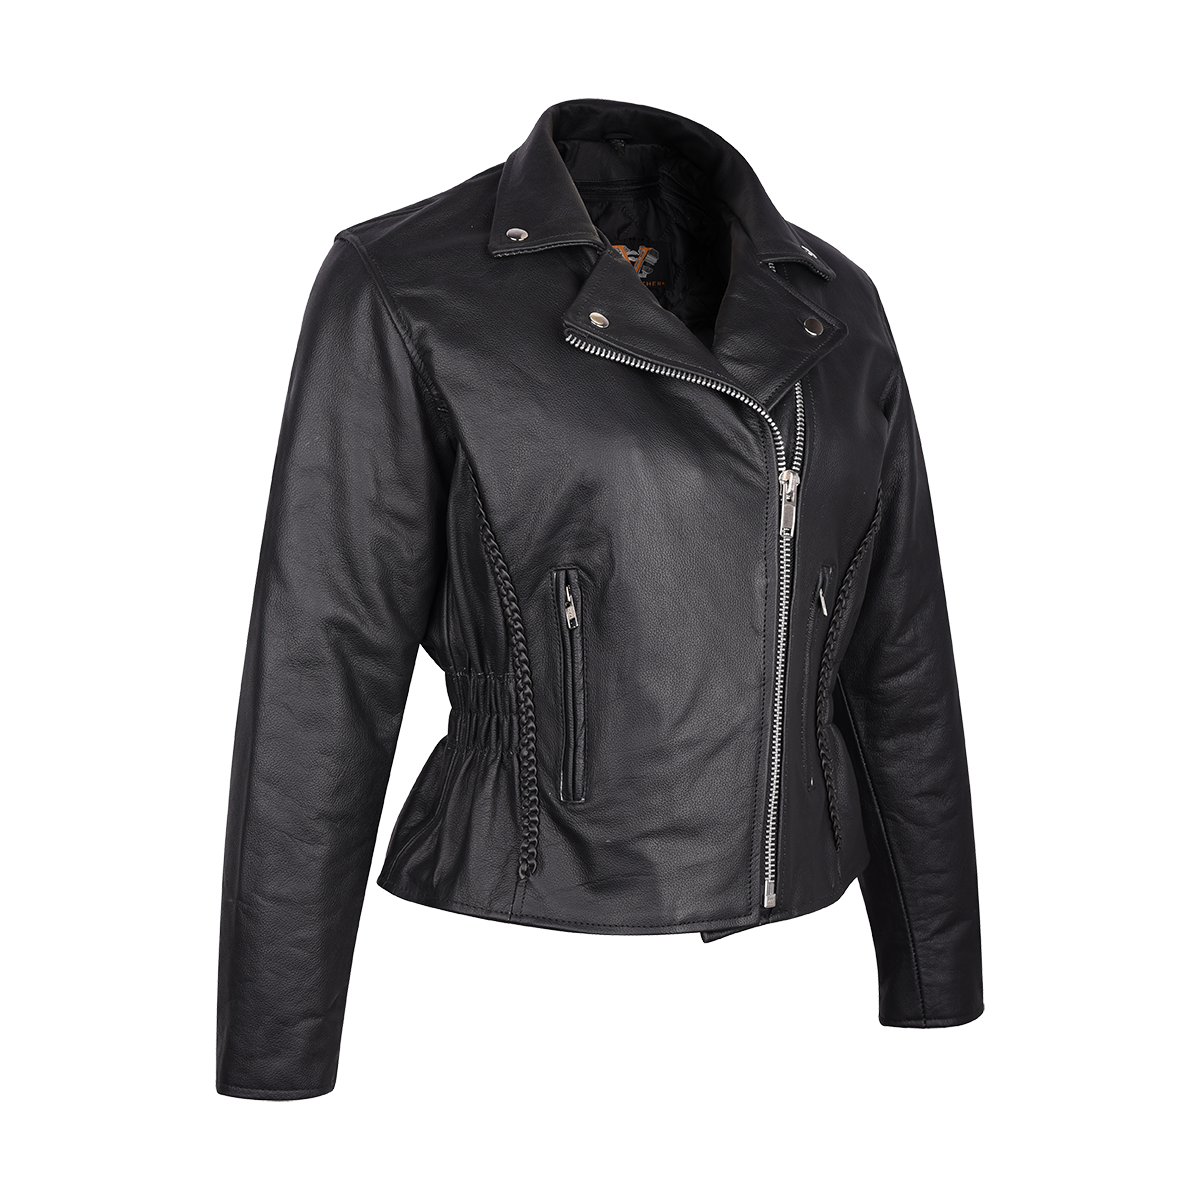 Vance Ladies Premium Cowhide Braid and Stud Motorcycle Leather Jacket